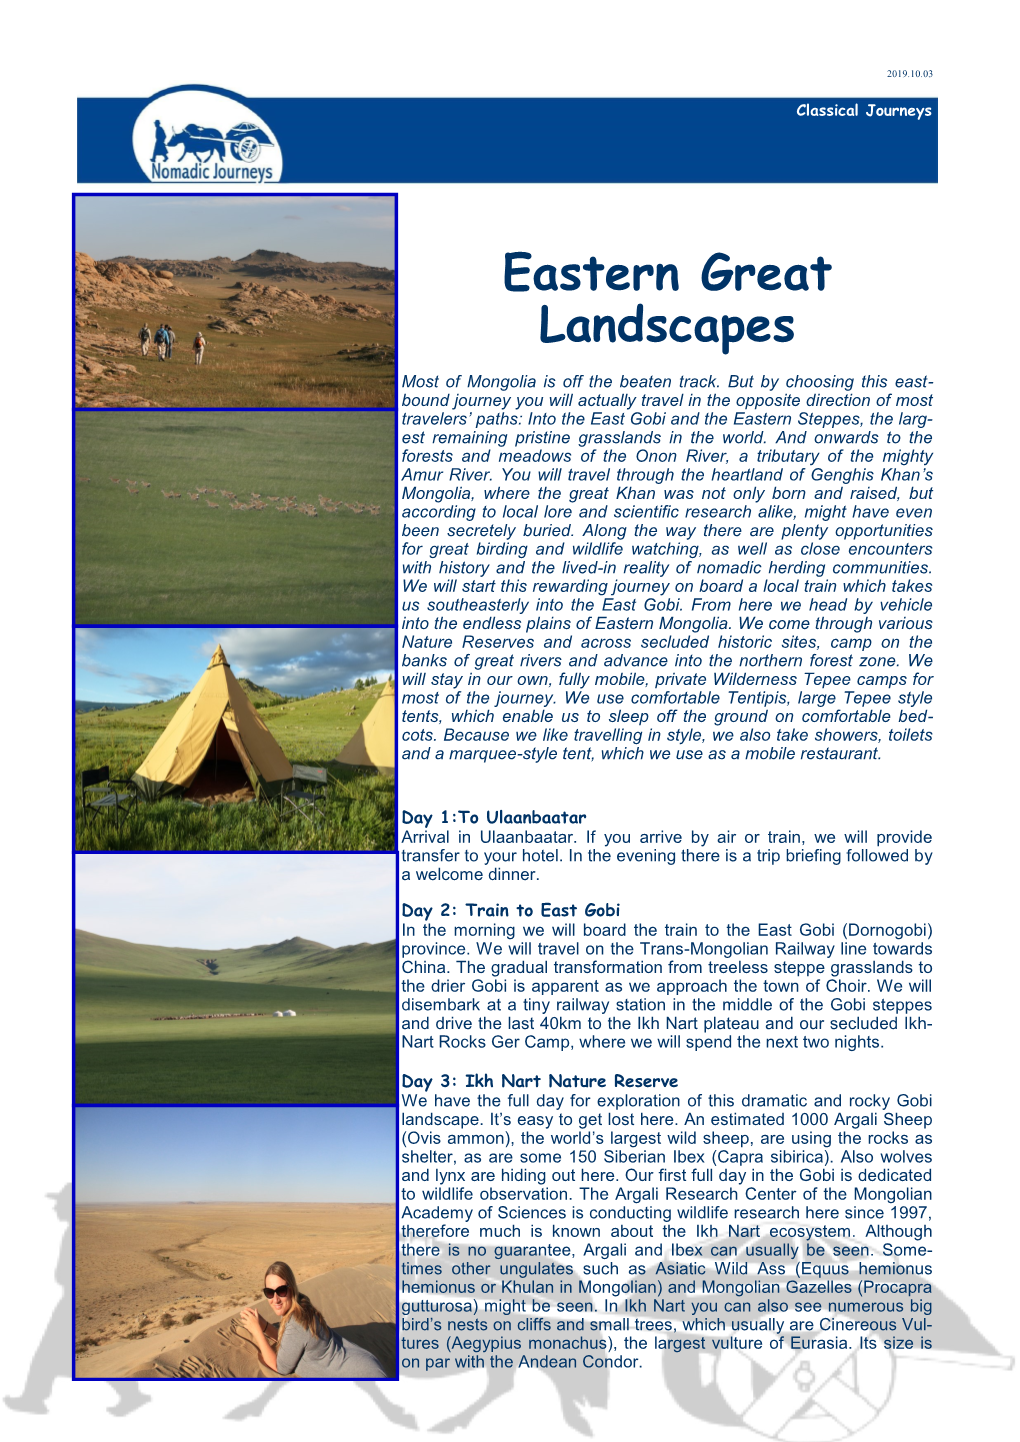 Eastern Great Landscapes